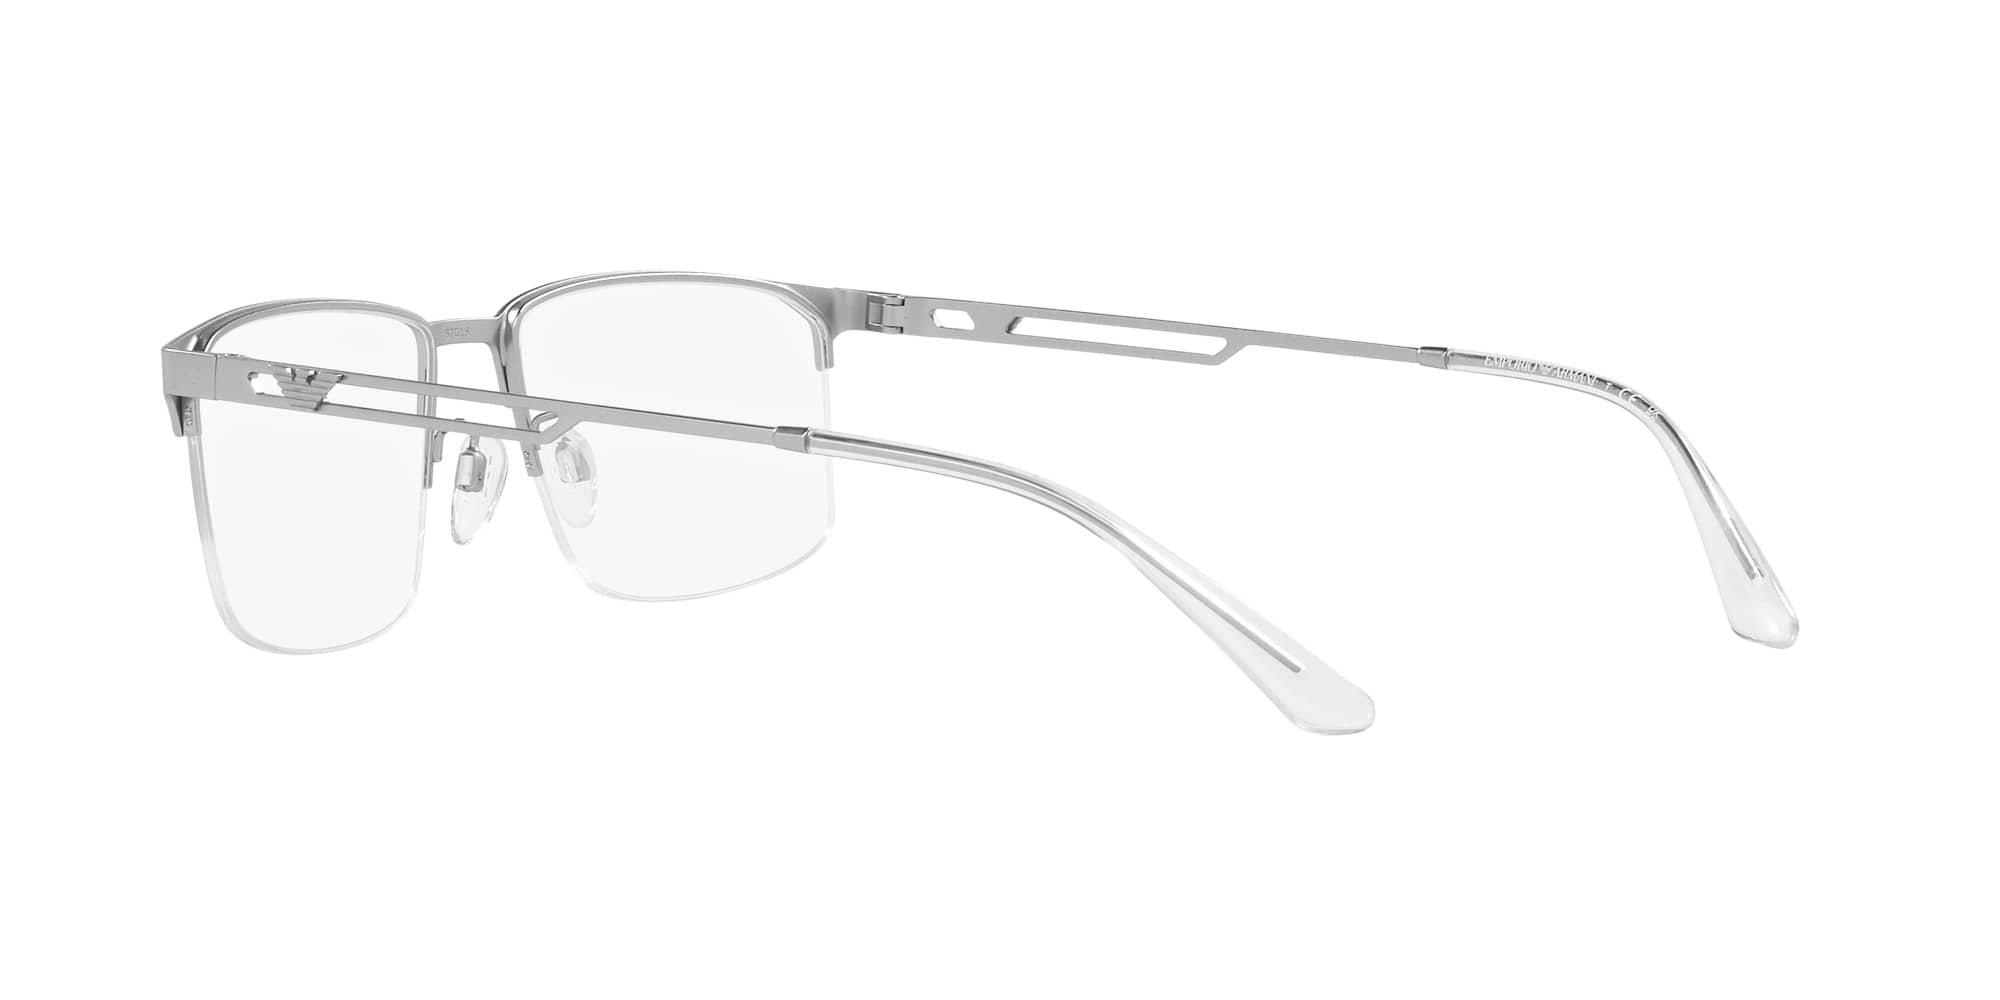 Das Bild zeigt die Korrektionsbrille EA1143 3045 von der Marke Emporio Armani in Silber.